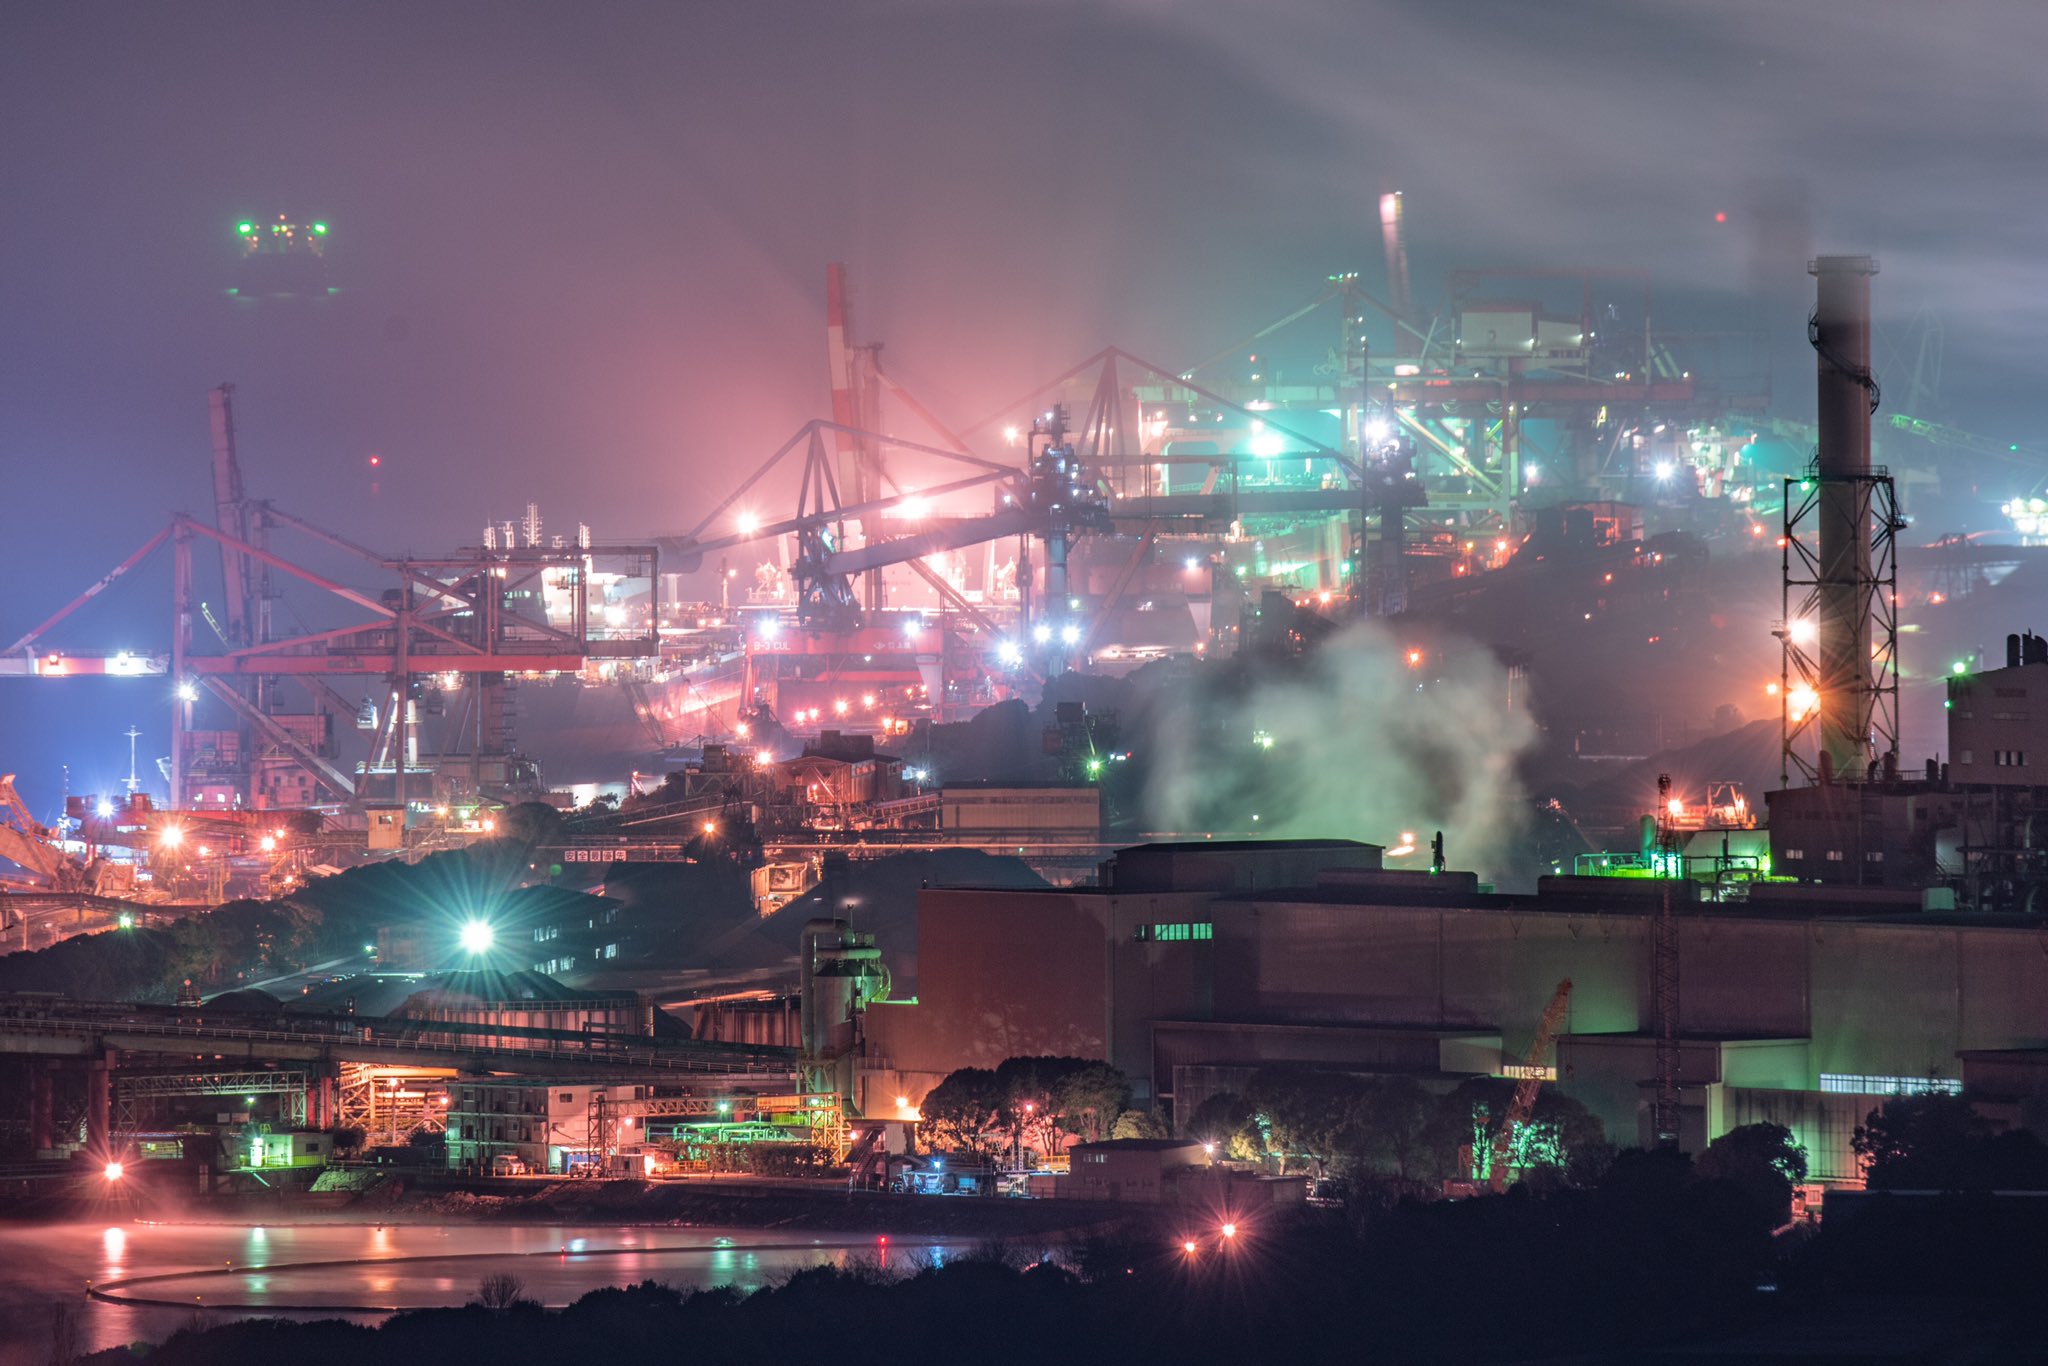 現實版神羅城？攝影家拍攝現實鋼鐵廠風景酷似米德加爾引熱議